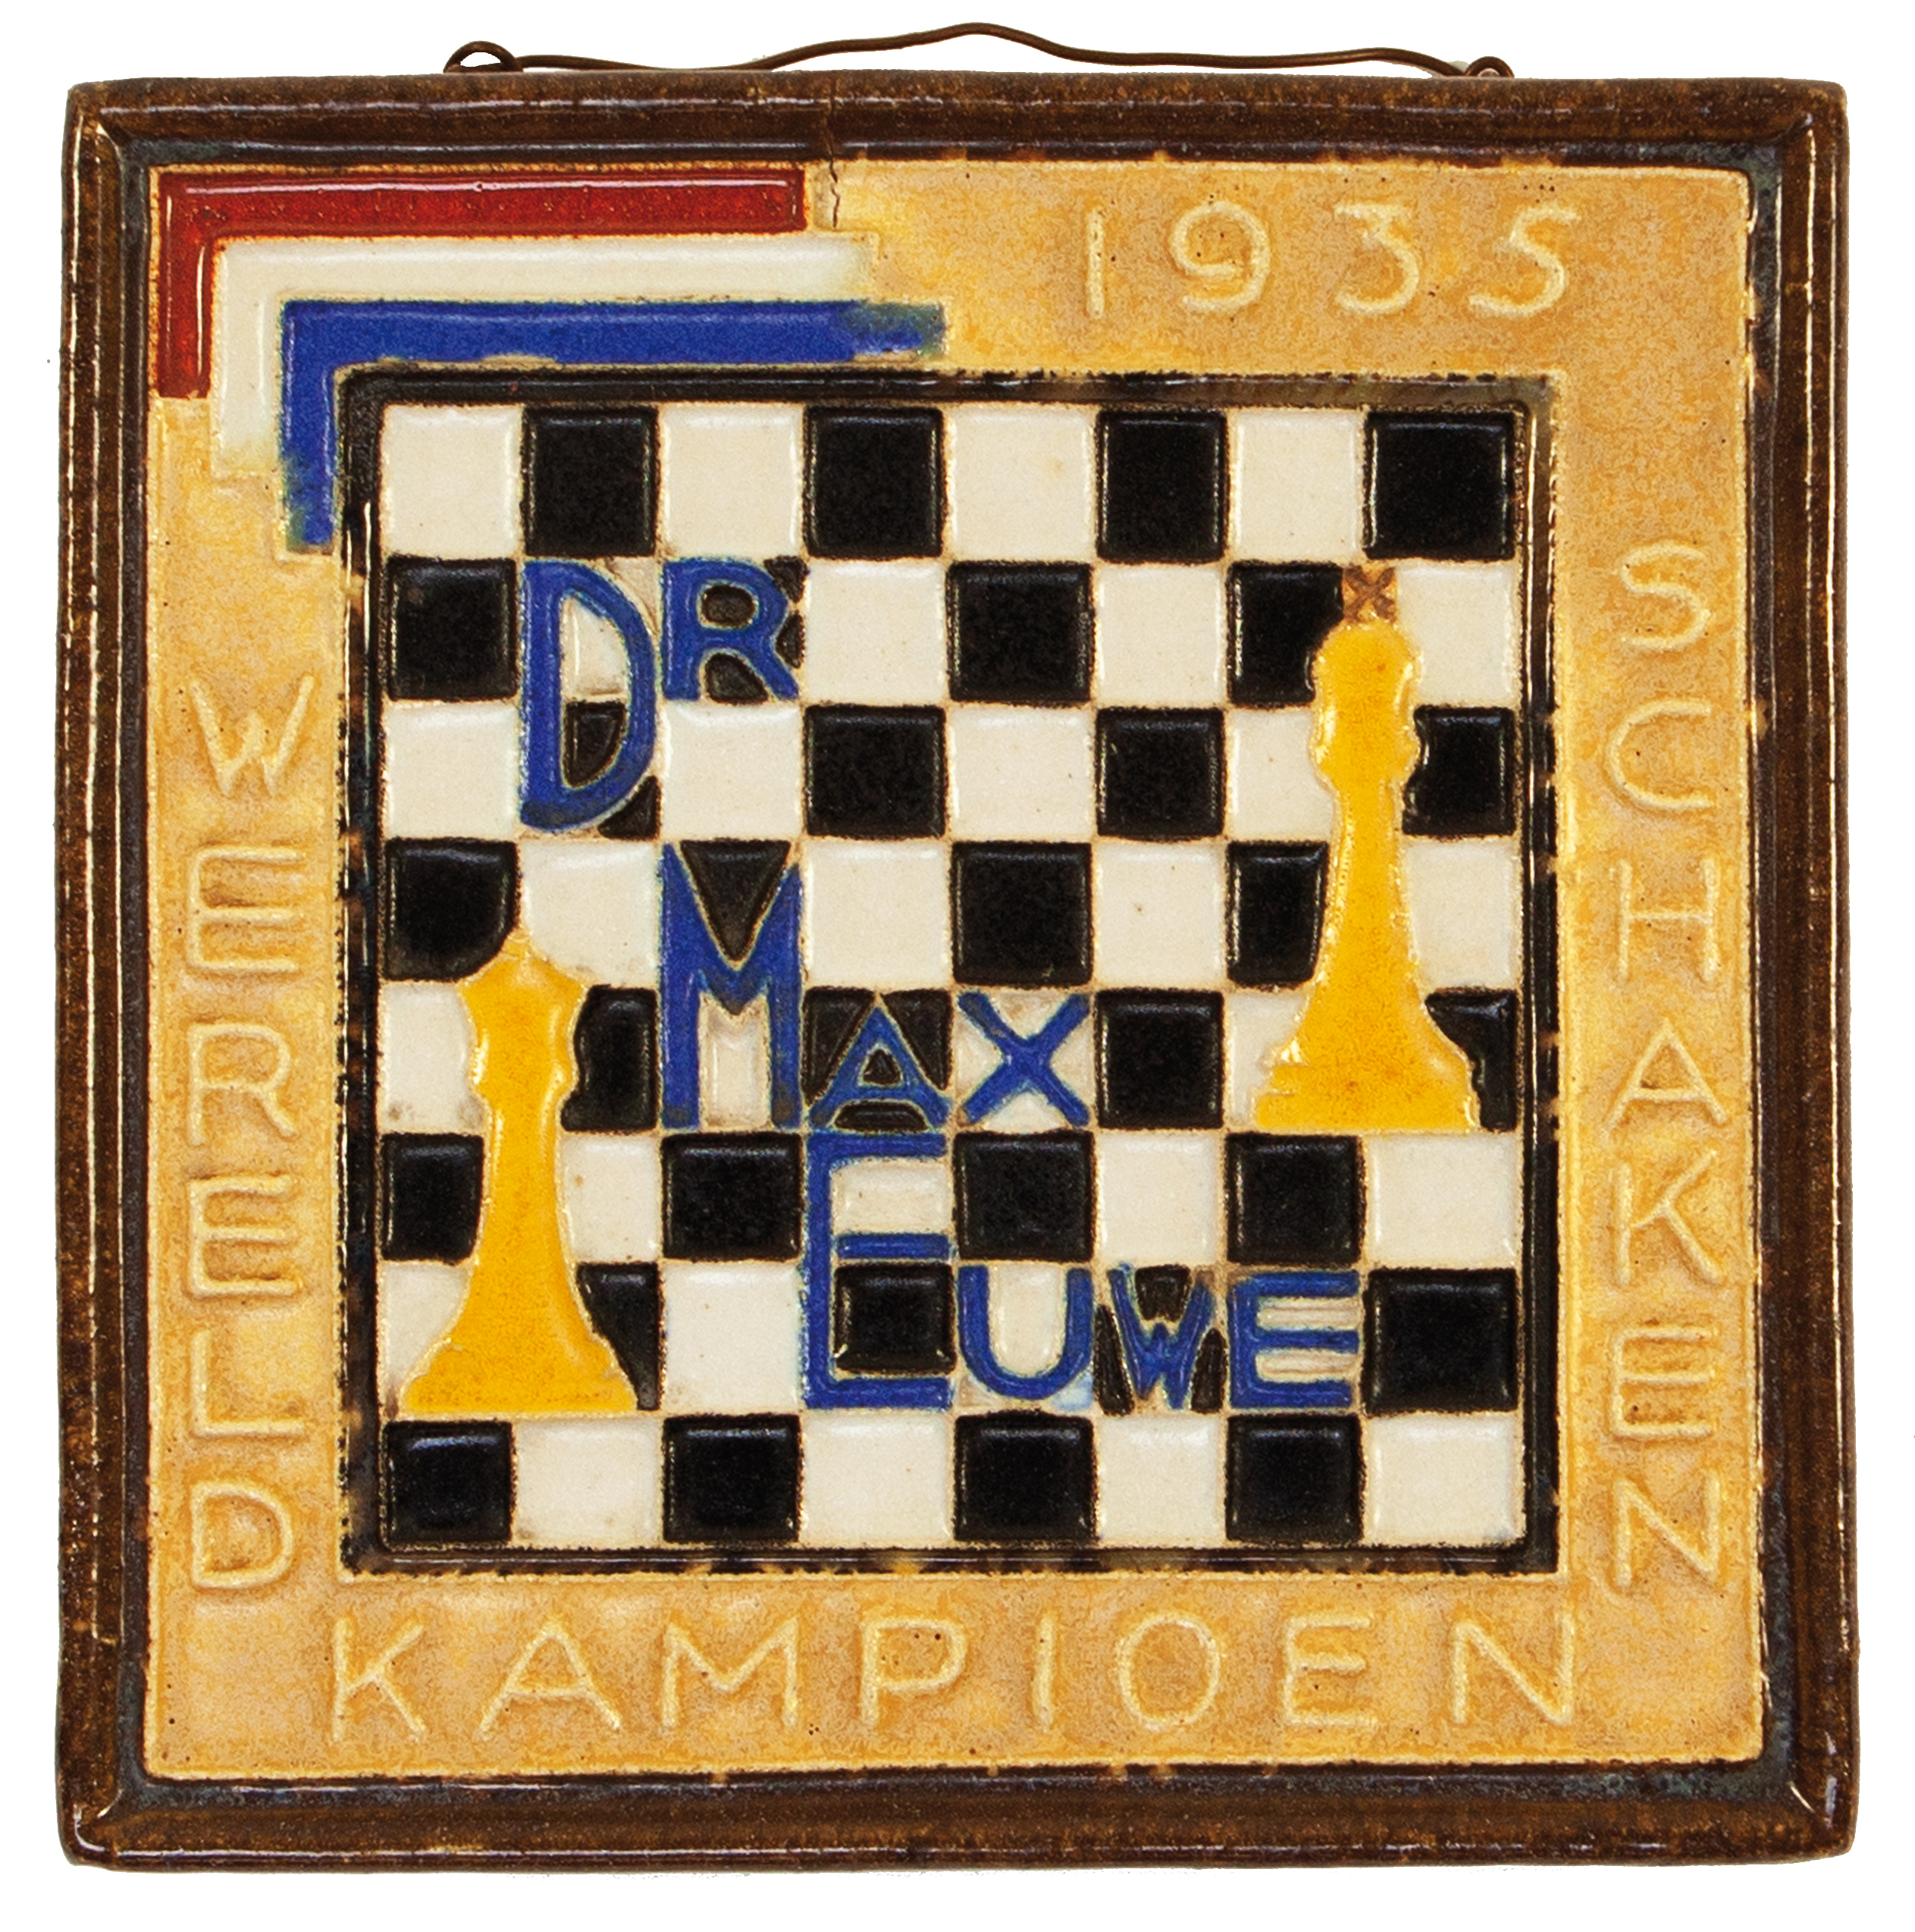 CHESS -- "Dr. MAX EUWE Wereldkampioen Schaken 1935". Delft blue memorial plate to